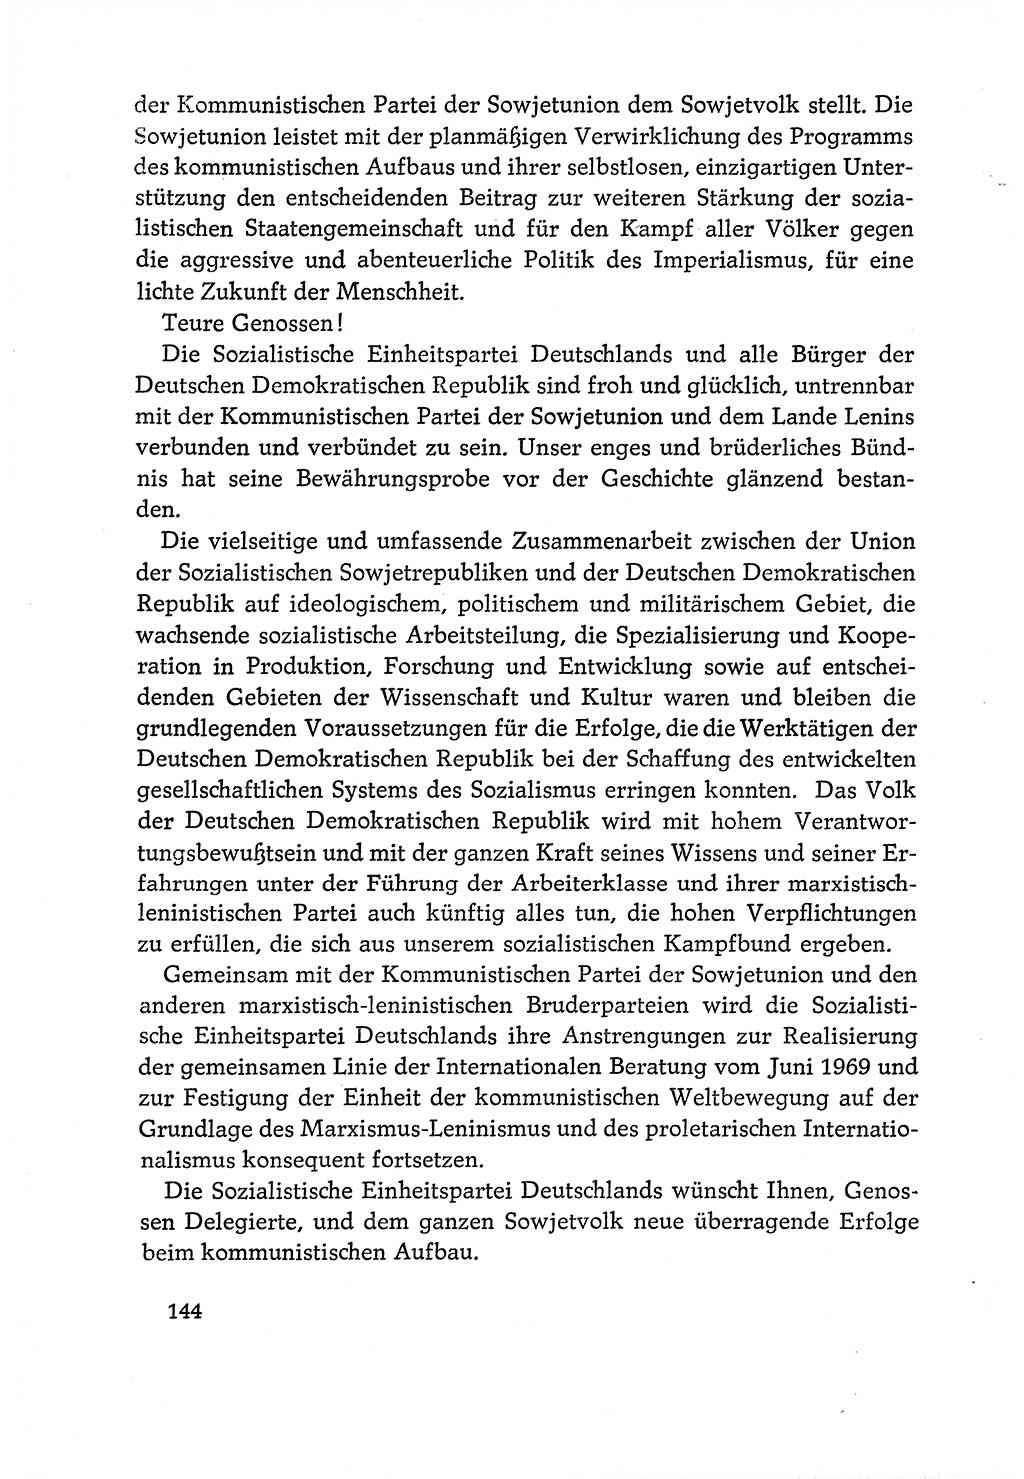 Dokumente der Sozialistischen Einheitspartei Deutschlands (SED) [Deutsche Demokratische Republik (DDR)] 1970-1971, Seite 144 (Dok. SED DDR 1970-1971, S. 144)